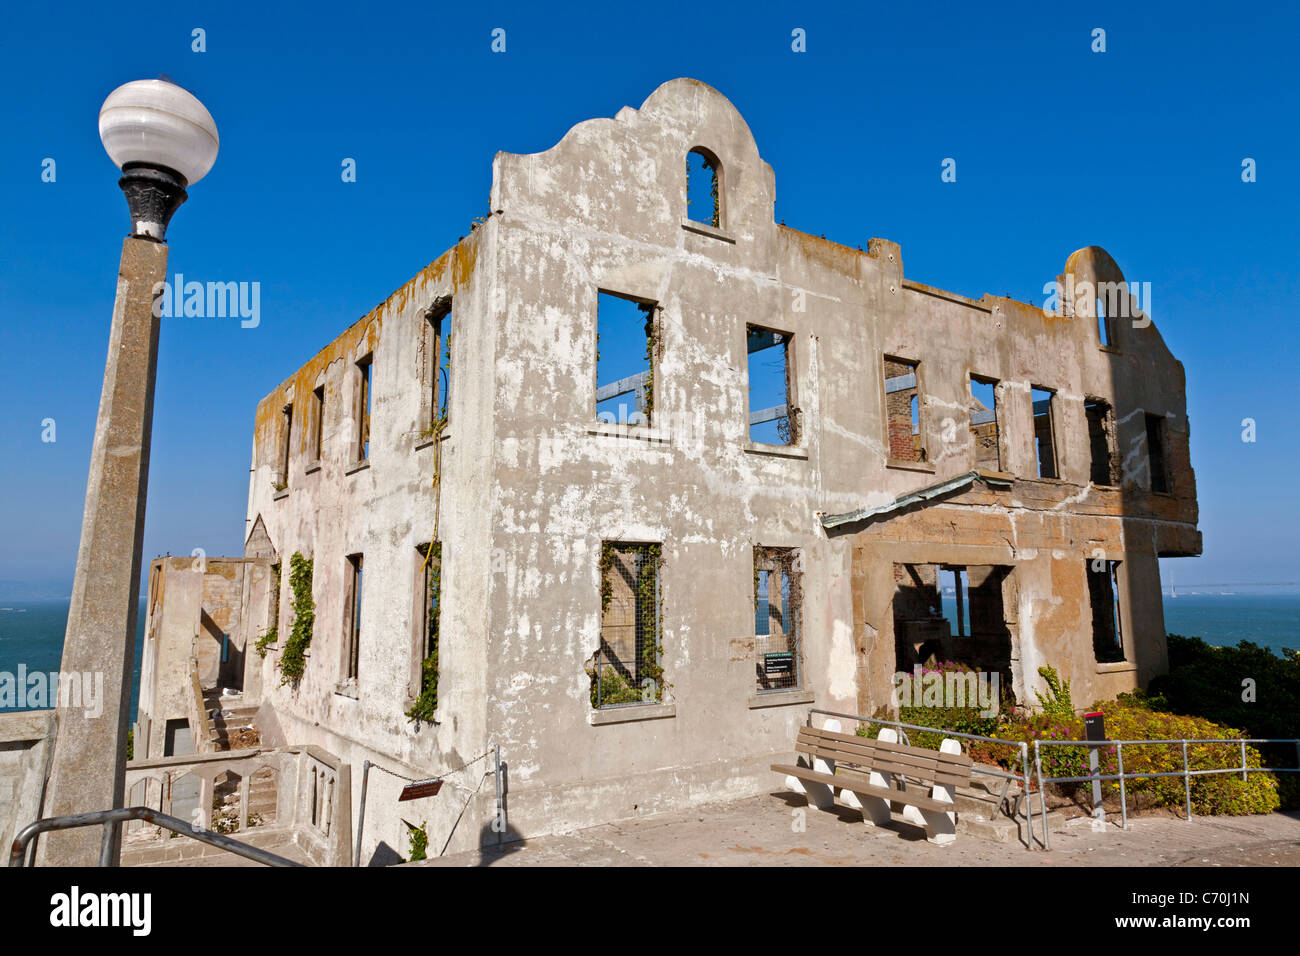 Des verfallenen Warden Haus, Gefängnis Alcatraz Insel Alcatraz, San Francisco Bay, Kalifornien, USA. JMH5236 Stockfoto